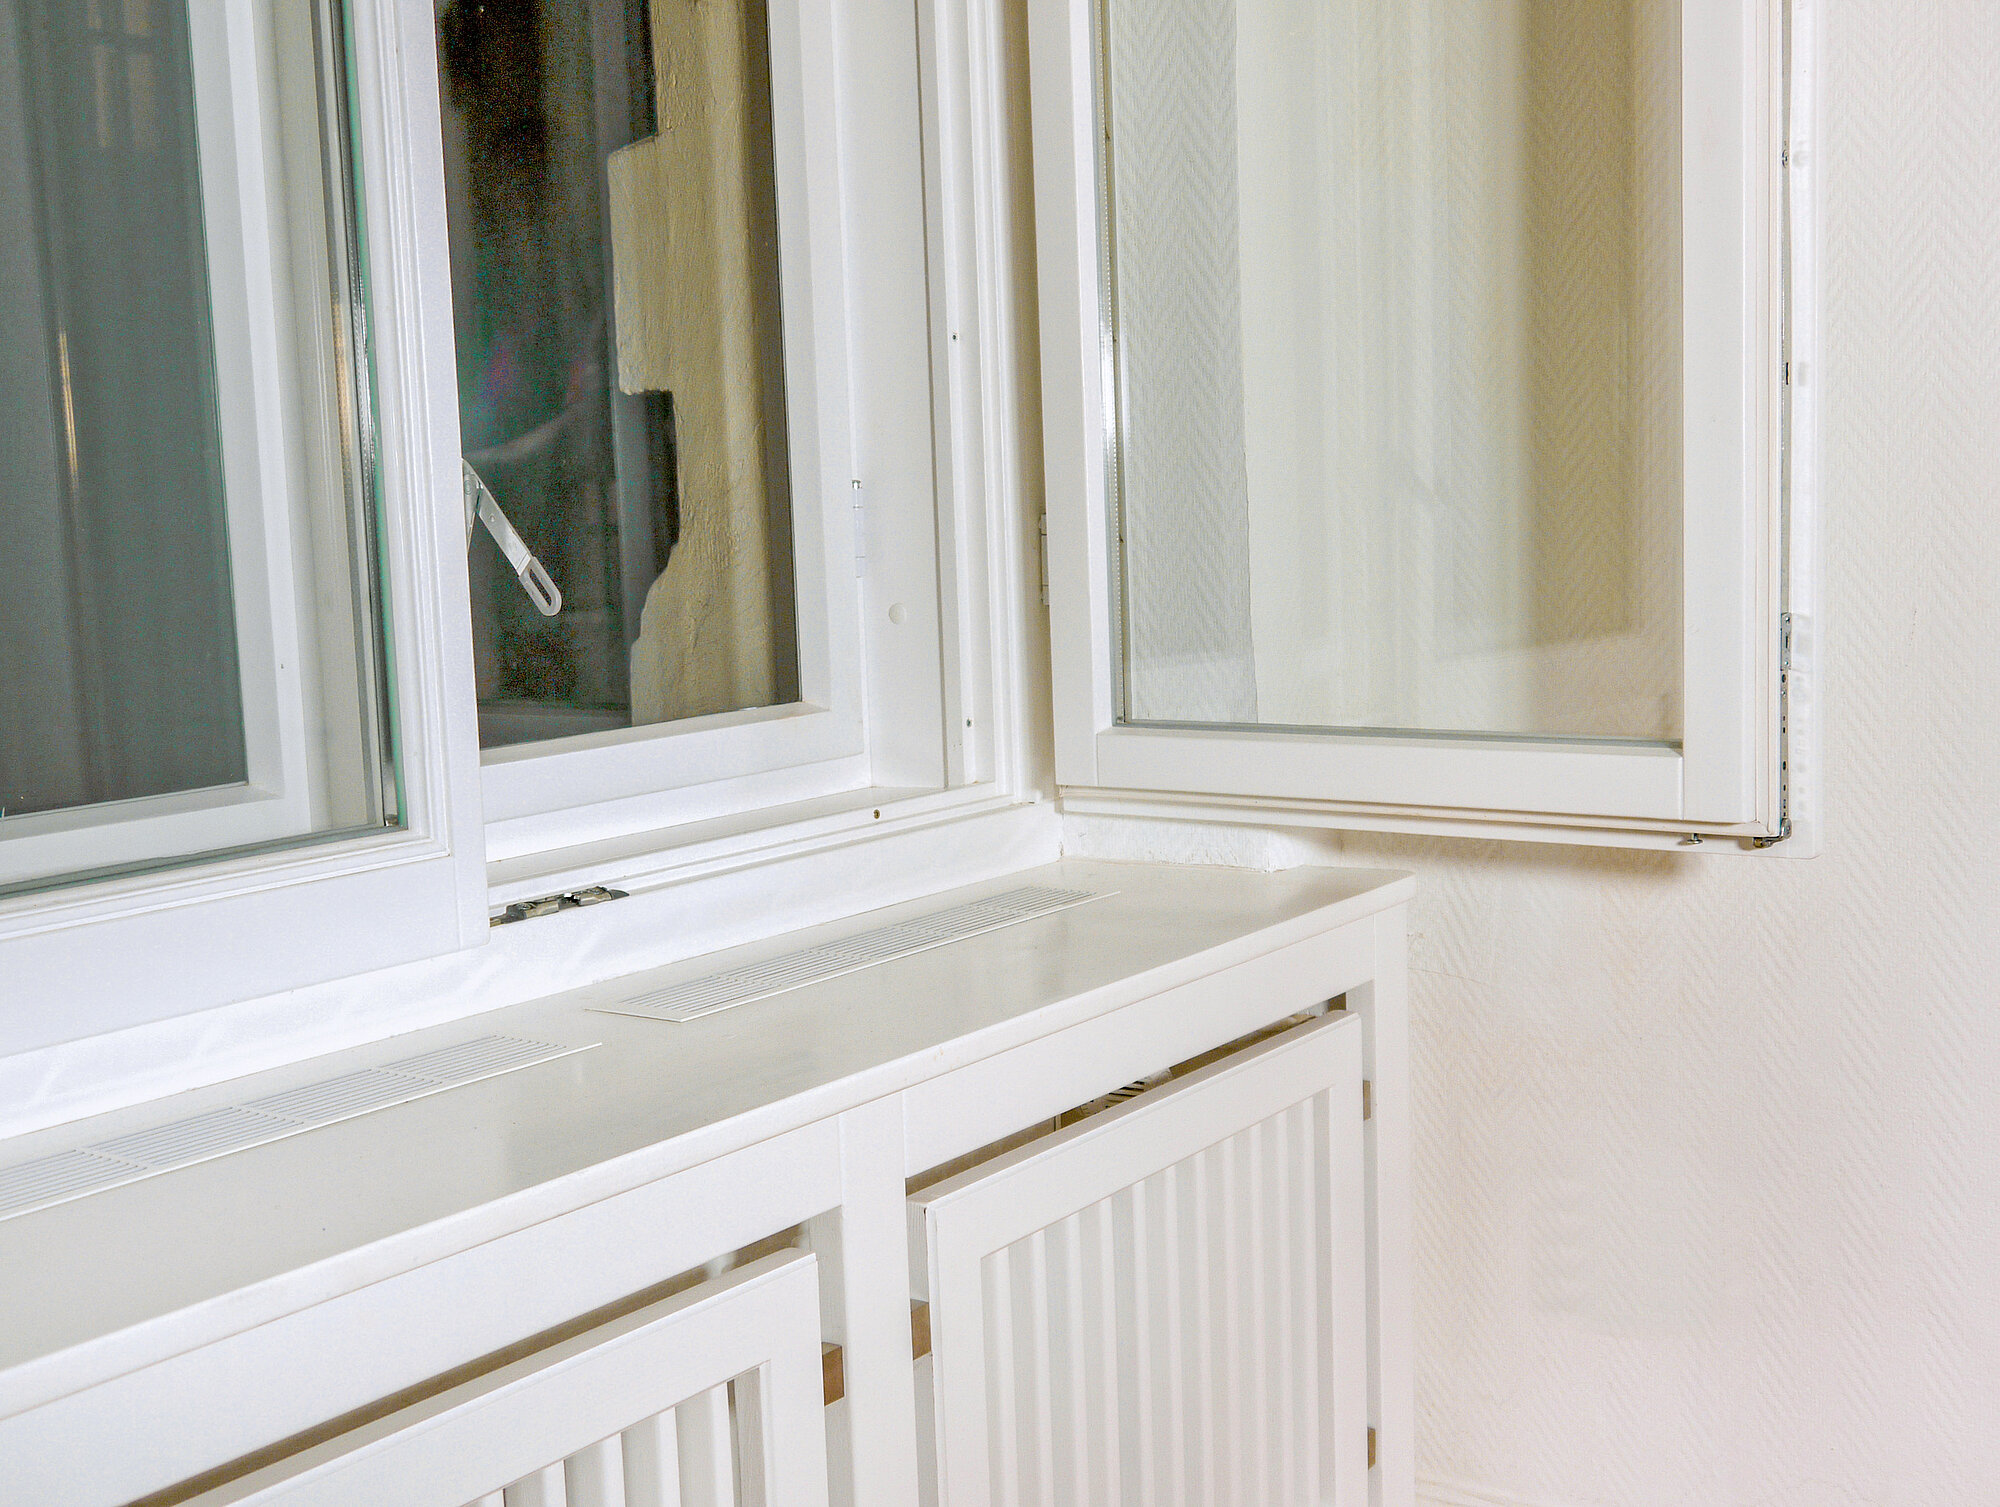 Wohnung Berlin: Innen modernes Isolierglas, außen Einfachverglasung, unten passend die Heizungsverkleidung